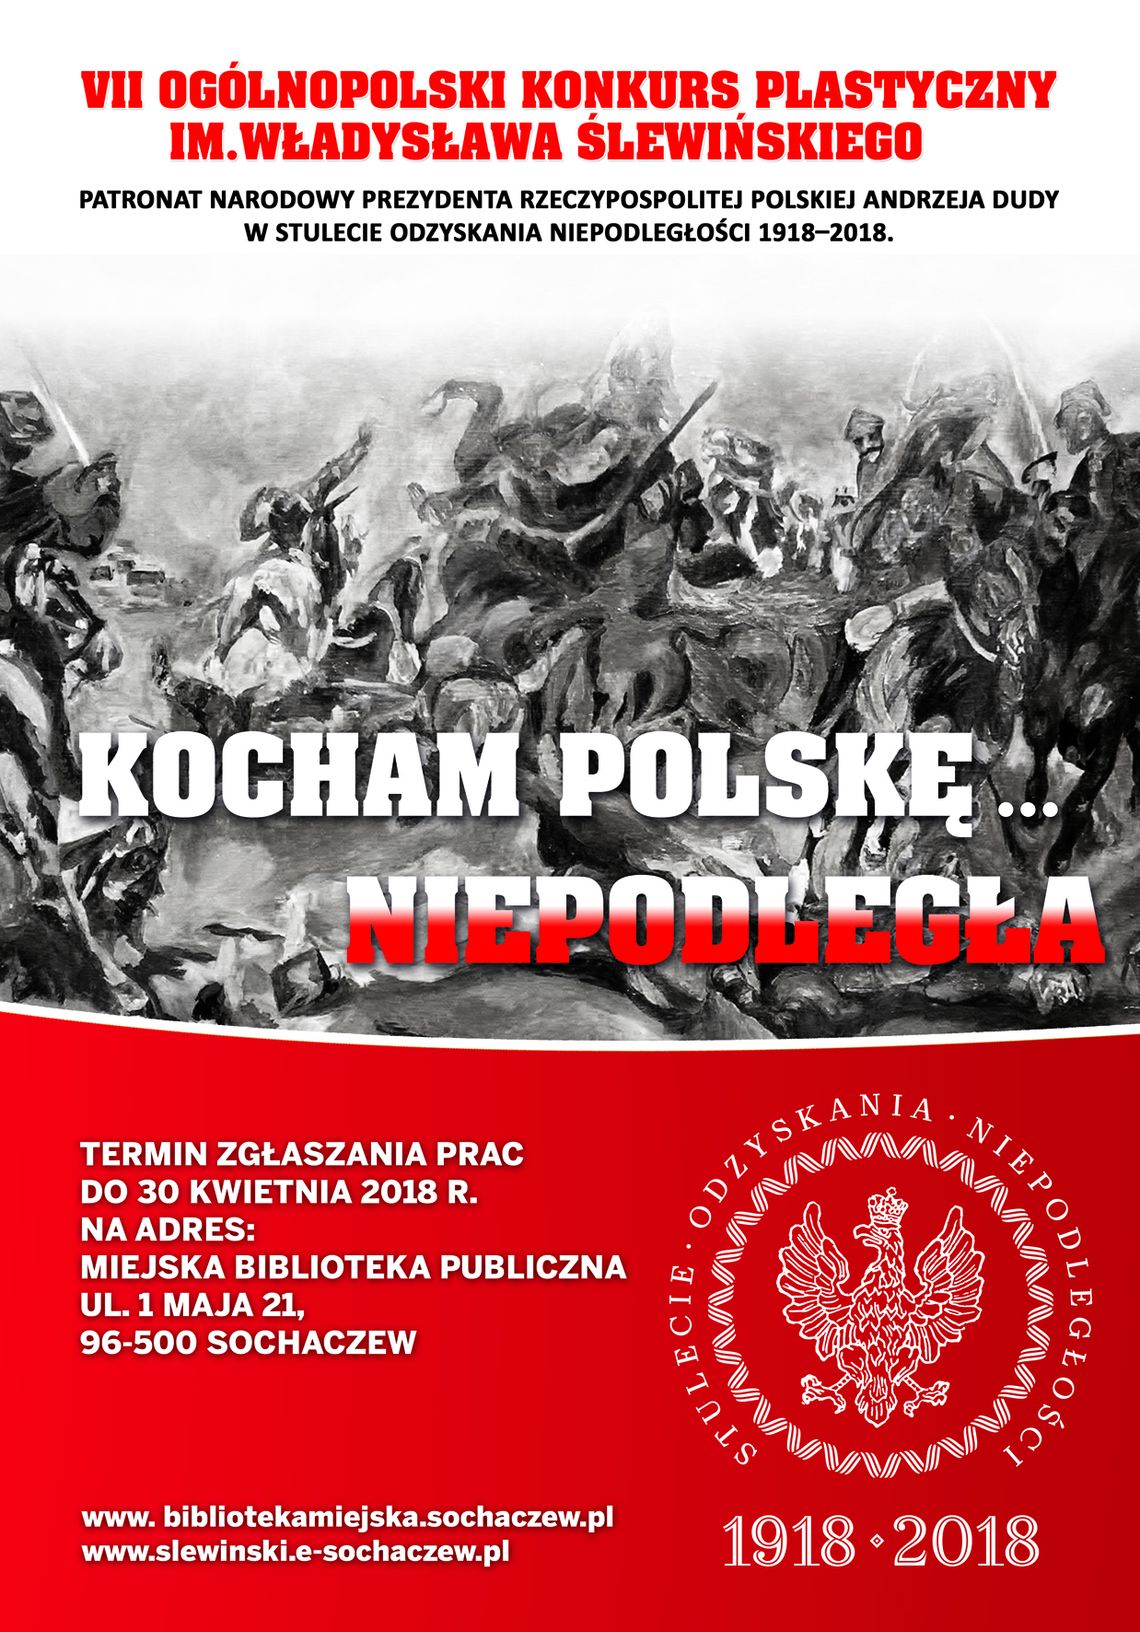 VII Ogólnopolski Konkurs Plastyczny im. Władysława Ślewińskiego